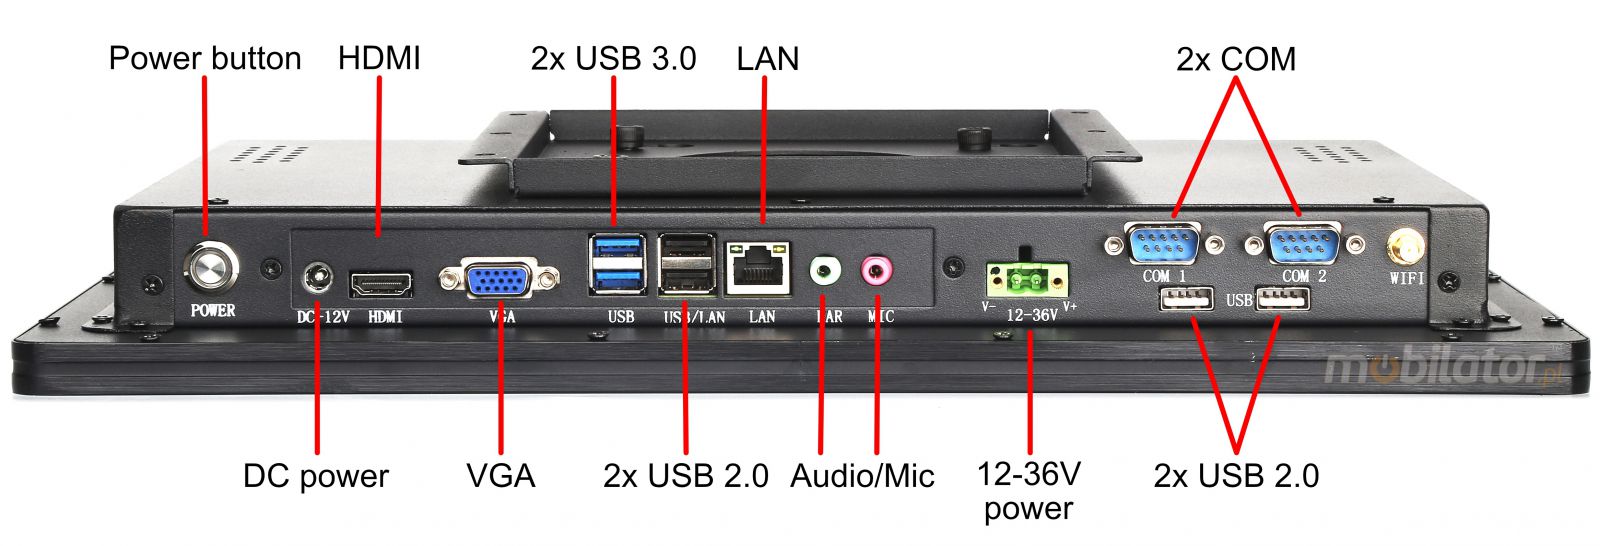 BIBOX-185PC2 zcza: 2x USB 3.0 | 2x USB 2.0 |2x COM | 2x LAN 1x VGA | 1x HDMI |DC 12V